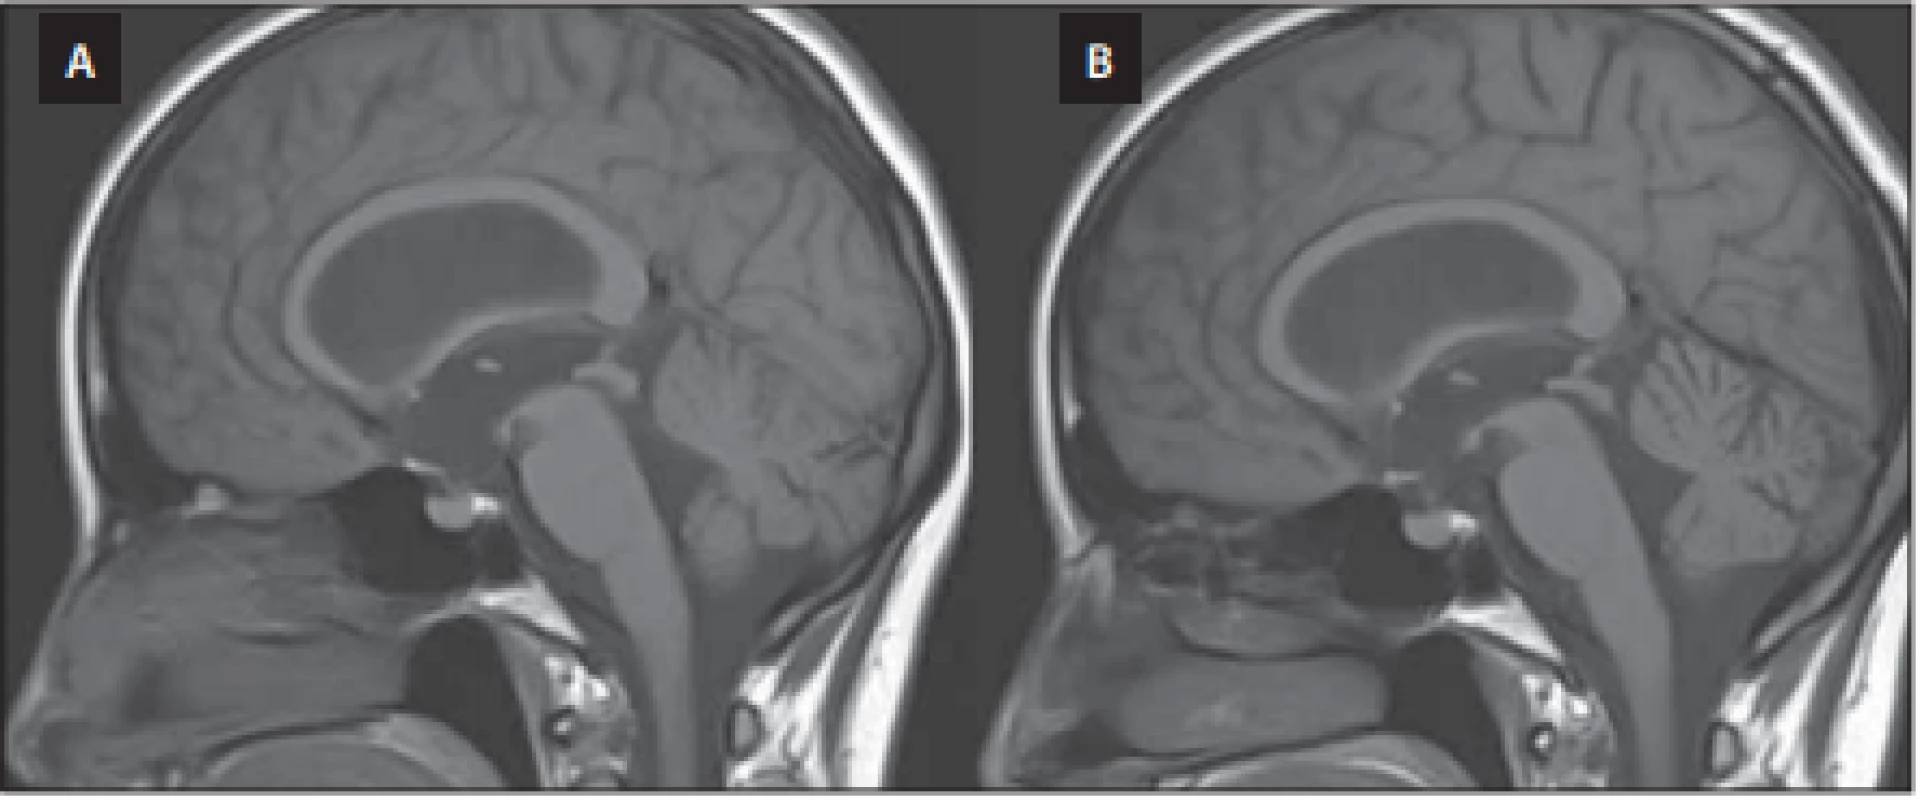  Předoperační MR mozku, T1 vážený obraz, sagitální projekce. (A) Vyjádřený 
bowing třetí komory. (B) Pooperační úprava tvaru třetí komory po úspěšné endoskopické ventrikulocisternostomii.<br>
Fig. 3. Preoperative brain MRI, T1-WI, sagittal projection. (A) Bowing of the third ventricle. (B) Postoperative correction of the third ventricle morphology after successful endoscopic ventriculocisternostomy. 